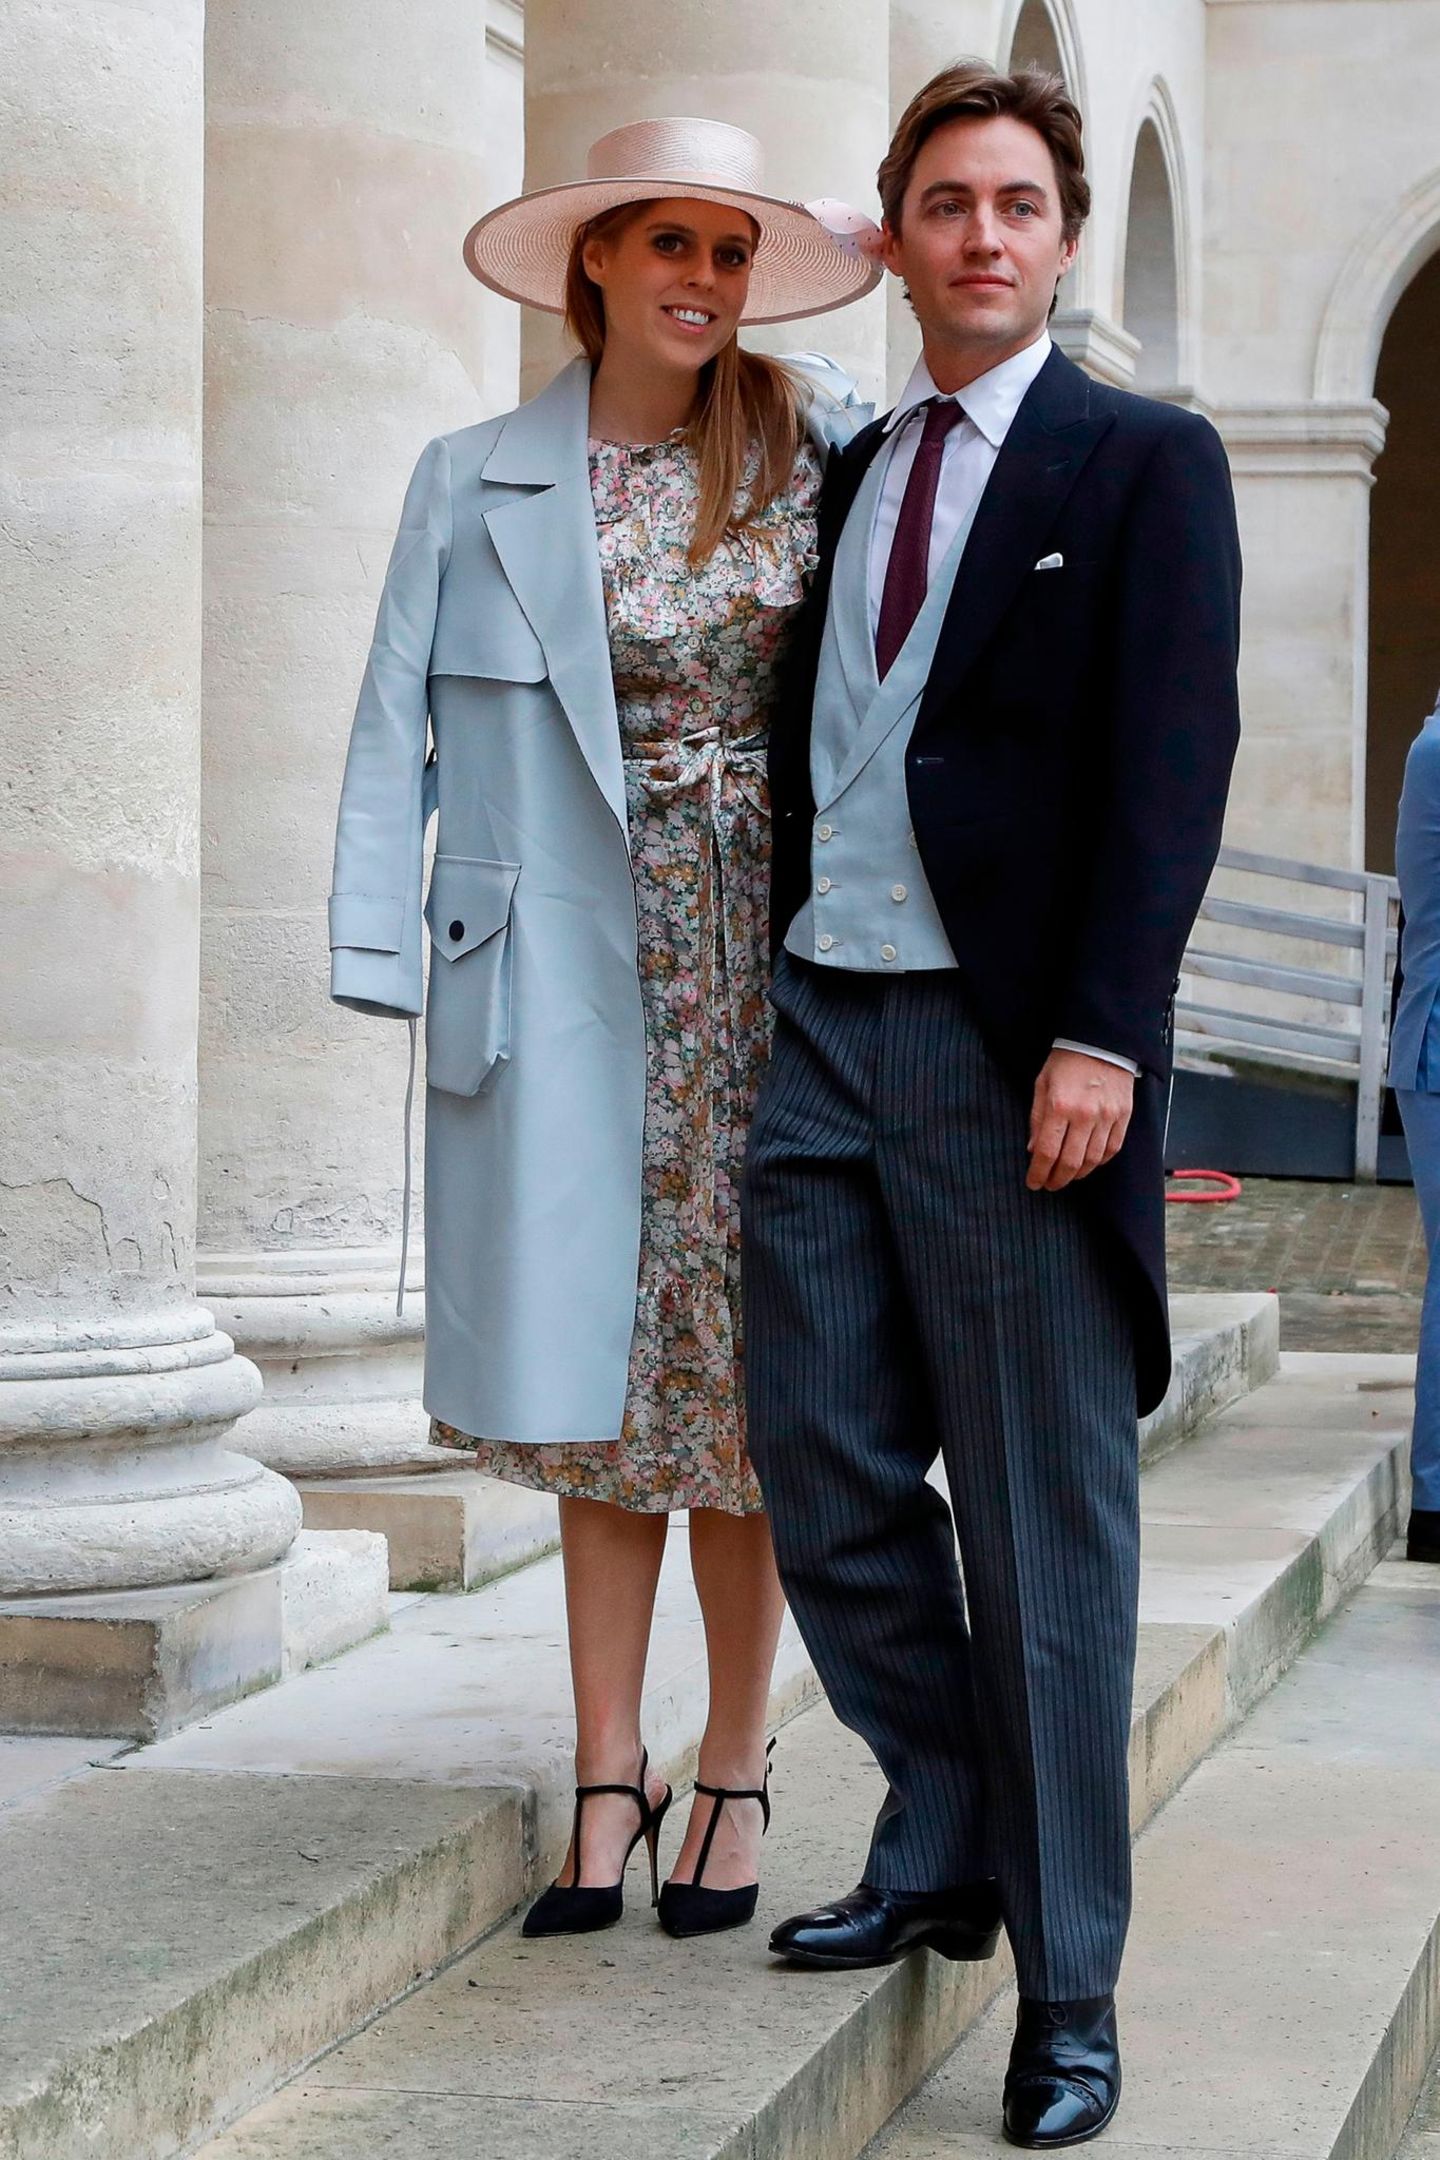 Hemliche Hochzeiten: Prinzessin Beatrice und Edoardo Mapelli Mozzi